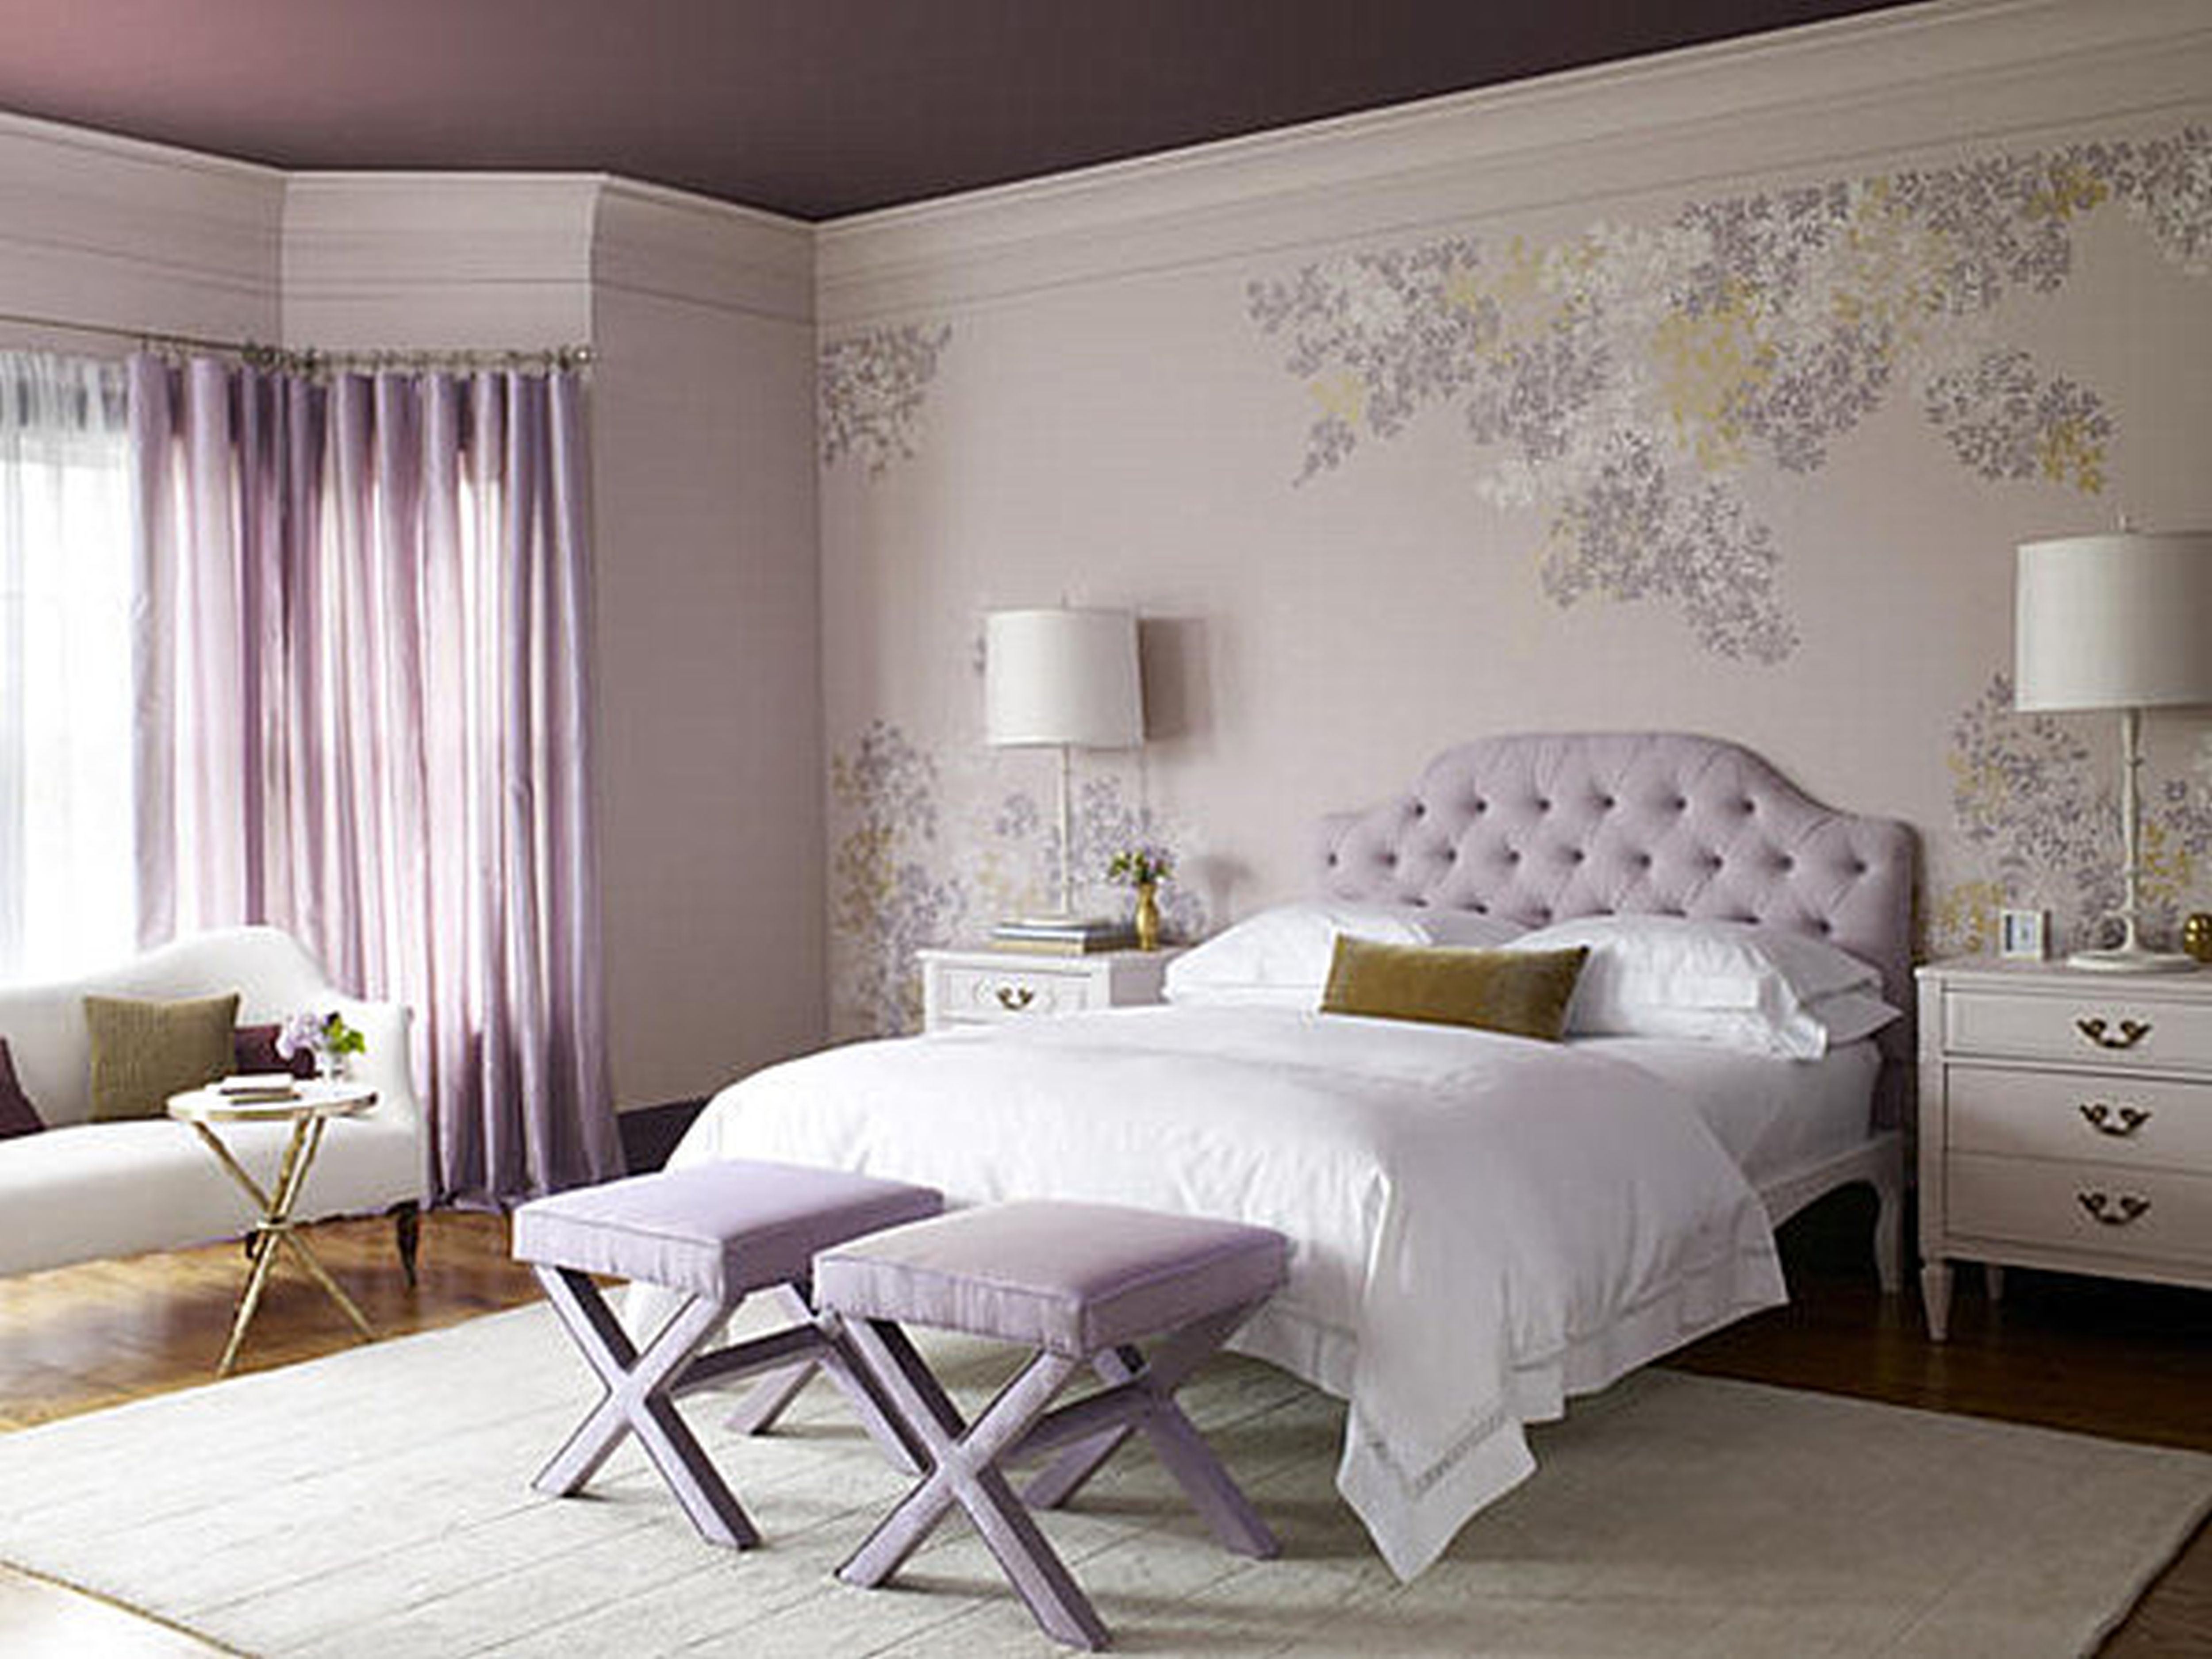 Однотонные обои (47 фото): светлые цвета стен в интерьере комнаты, красивые цветные матовые варианты в зал